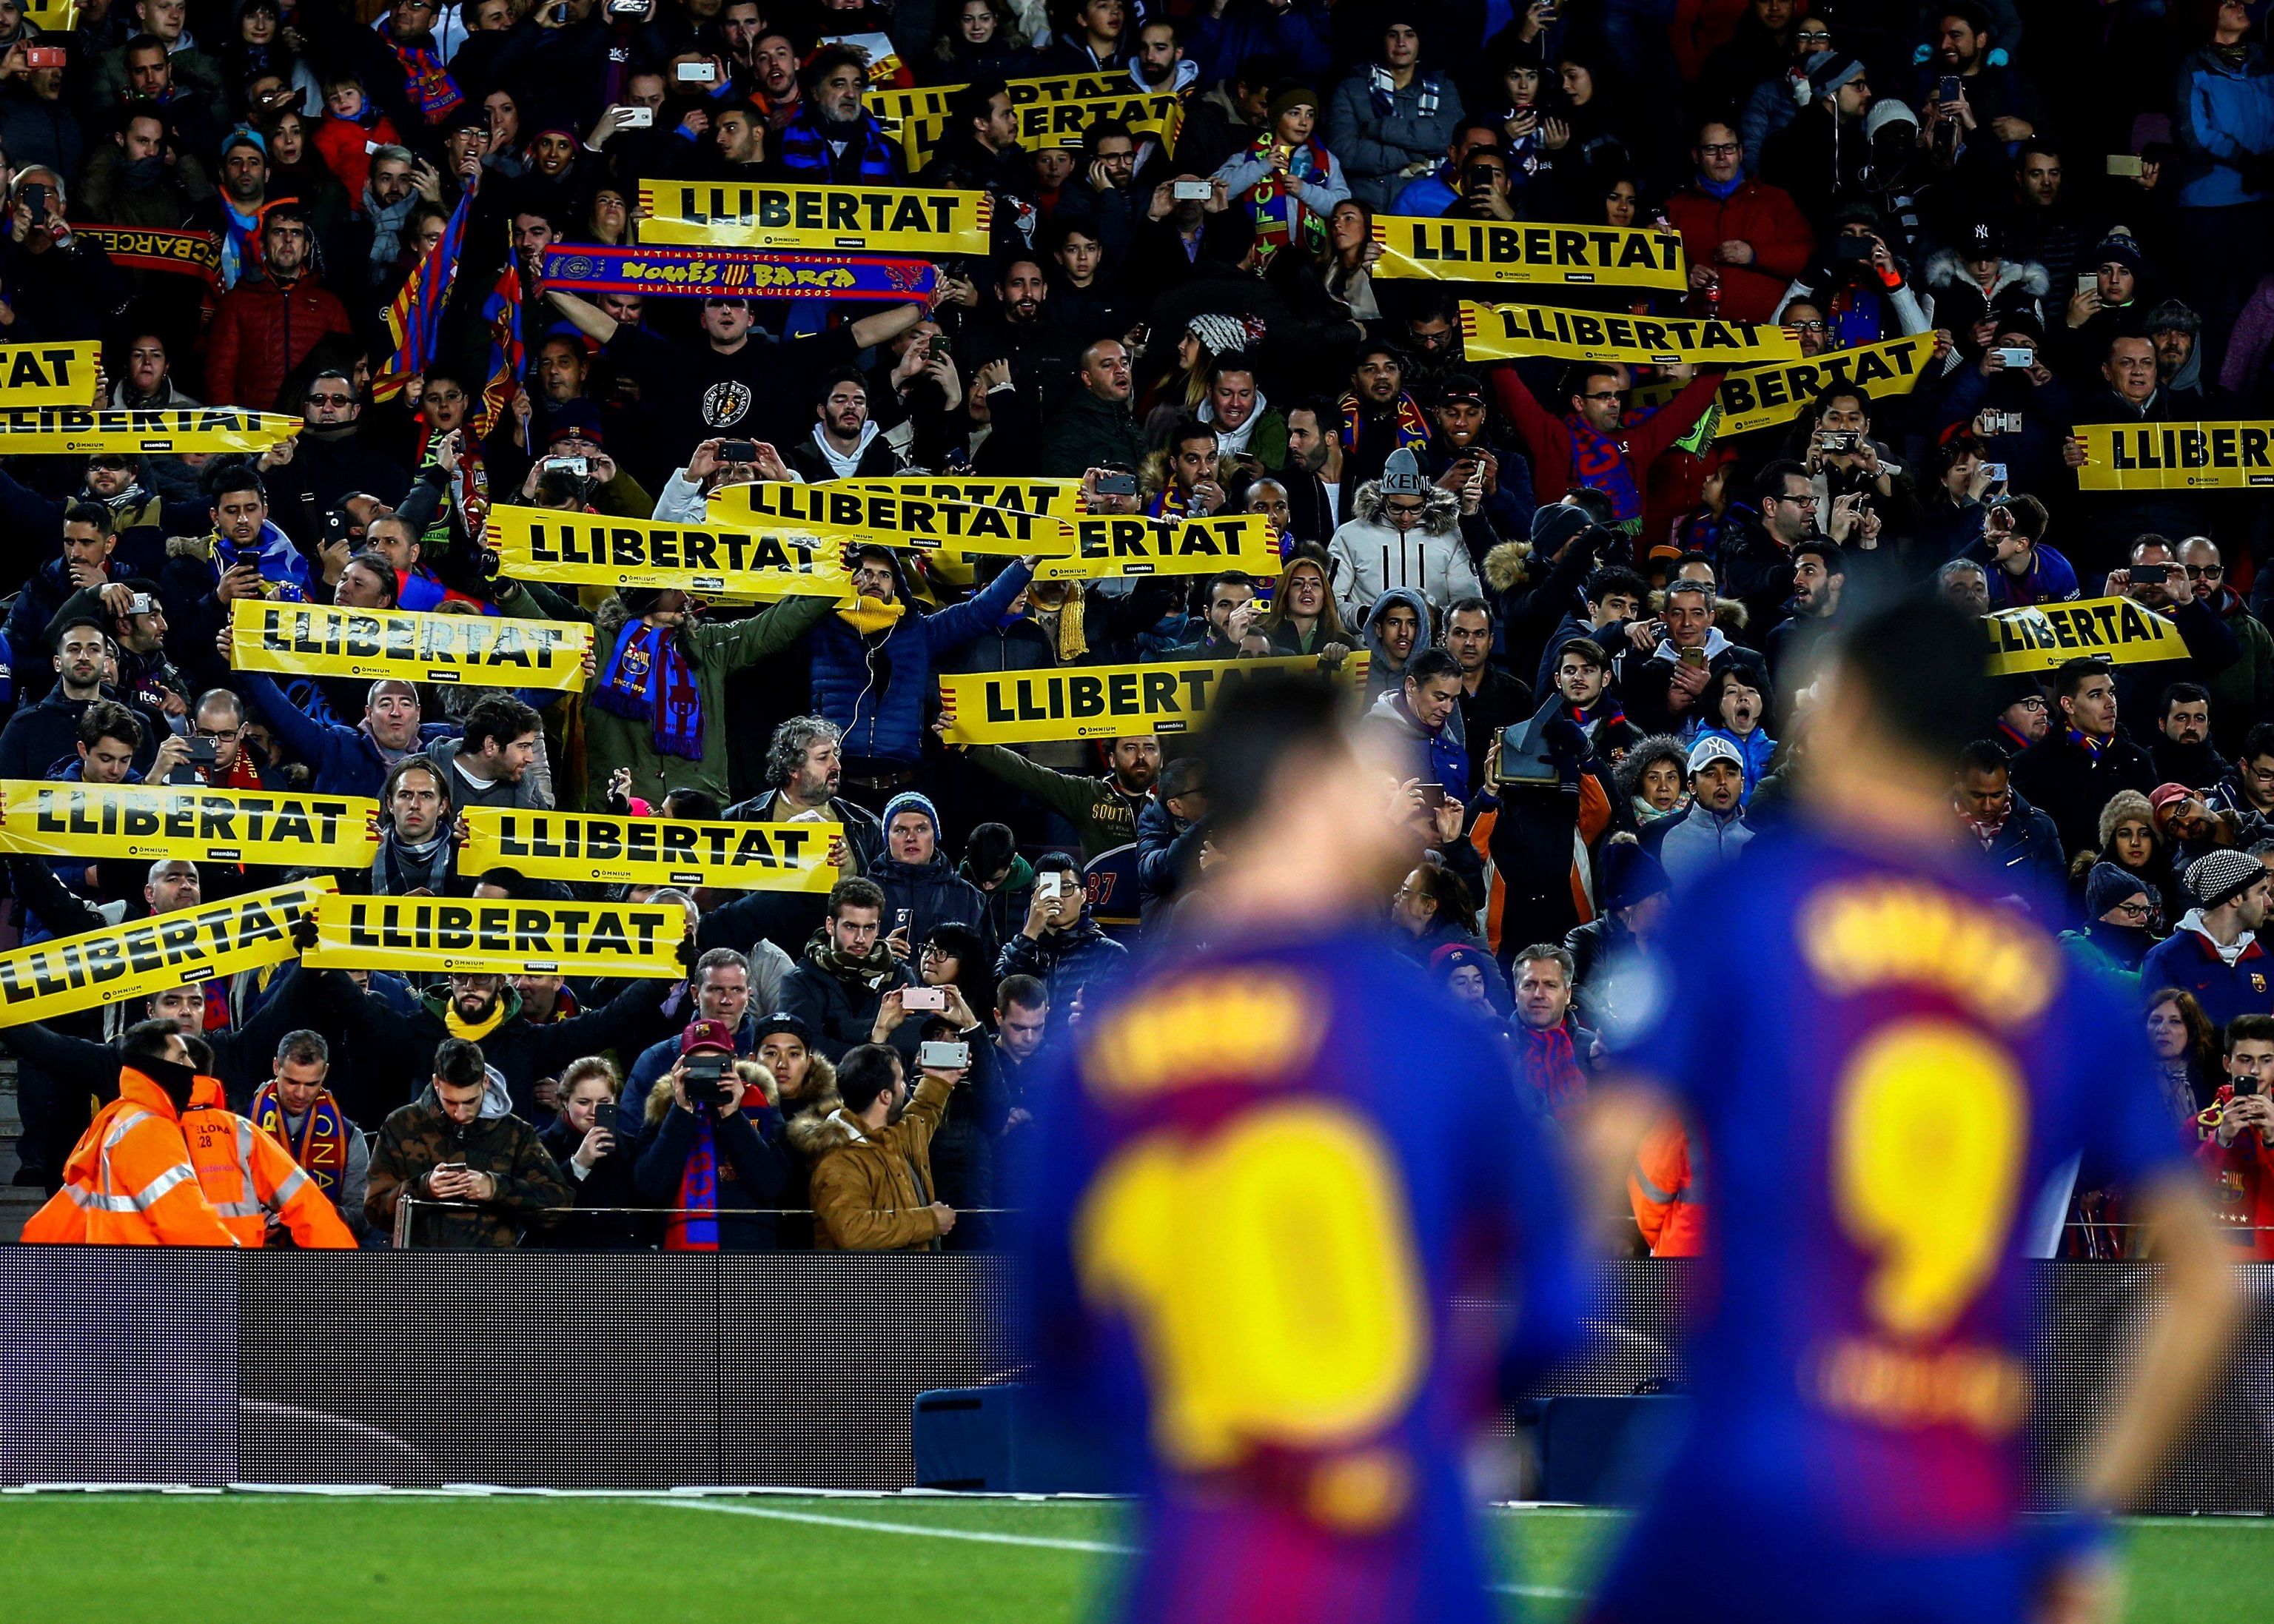 Messi y Suárez con aficionados del Barça protestando a favor de la libertad de los políticos presos.